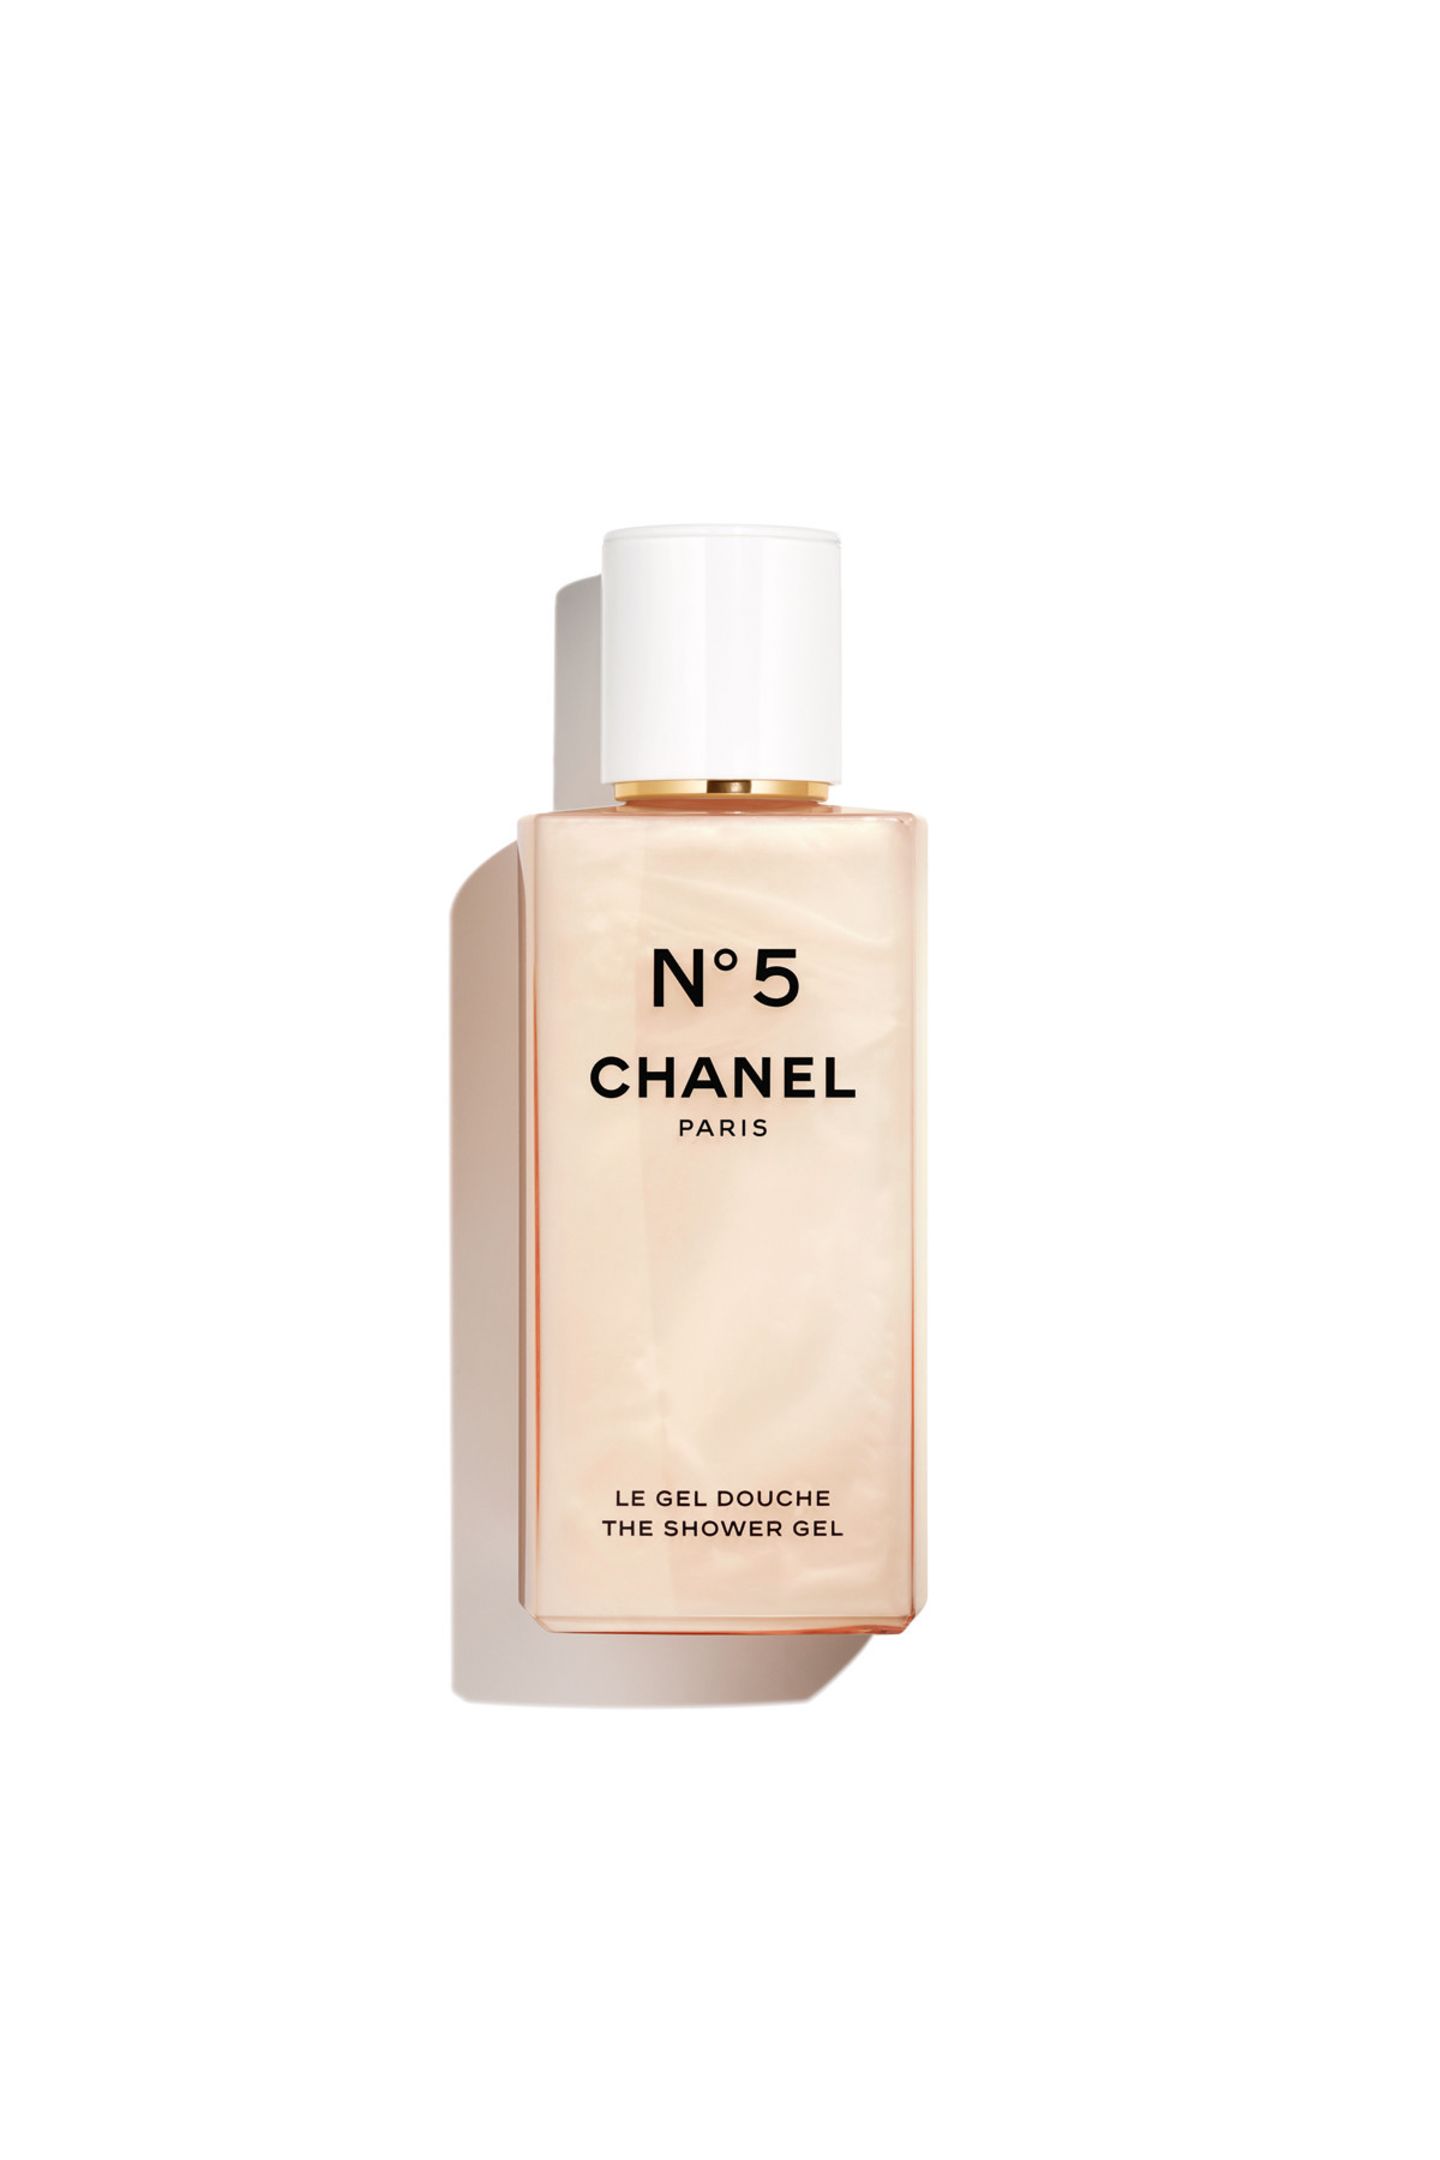 Auch unter der Dusche darf es gerne mal etwas luxuriöser zugehen. Das Chanel "N°5 Duschgel" kommt nicht nur in einem wunderschönen Flakon daher, sondern auch mit dem ikonischen Blütenbouquet und einer cremig-schäumenden Textur. Ca. 49 Euro. 